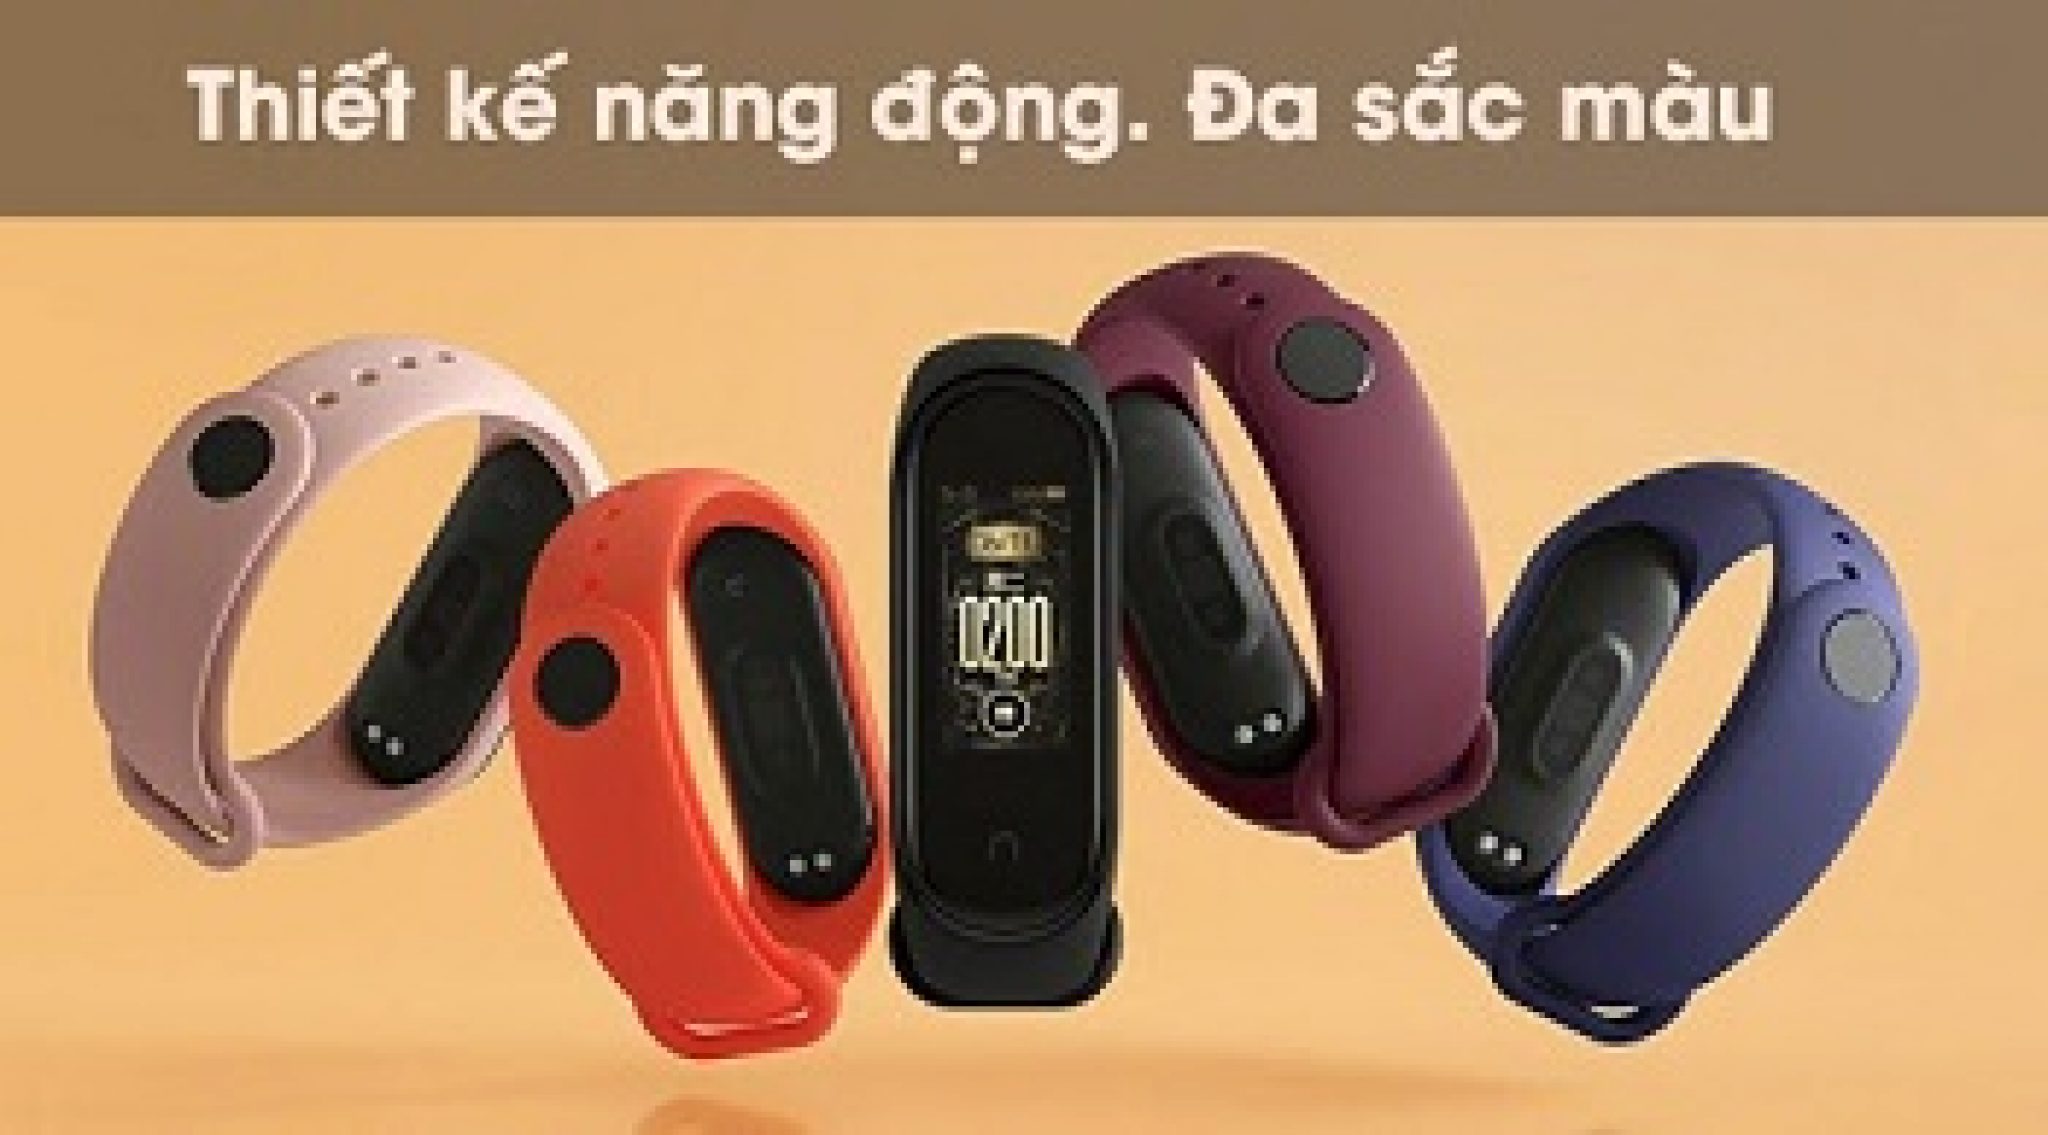 Top 5 đồng hồ thông minh giá rẻ được ưa chuộng tại Việt Nam 2